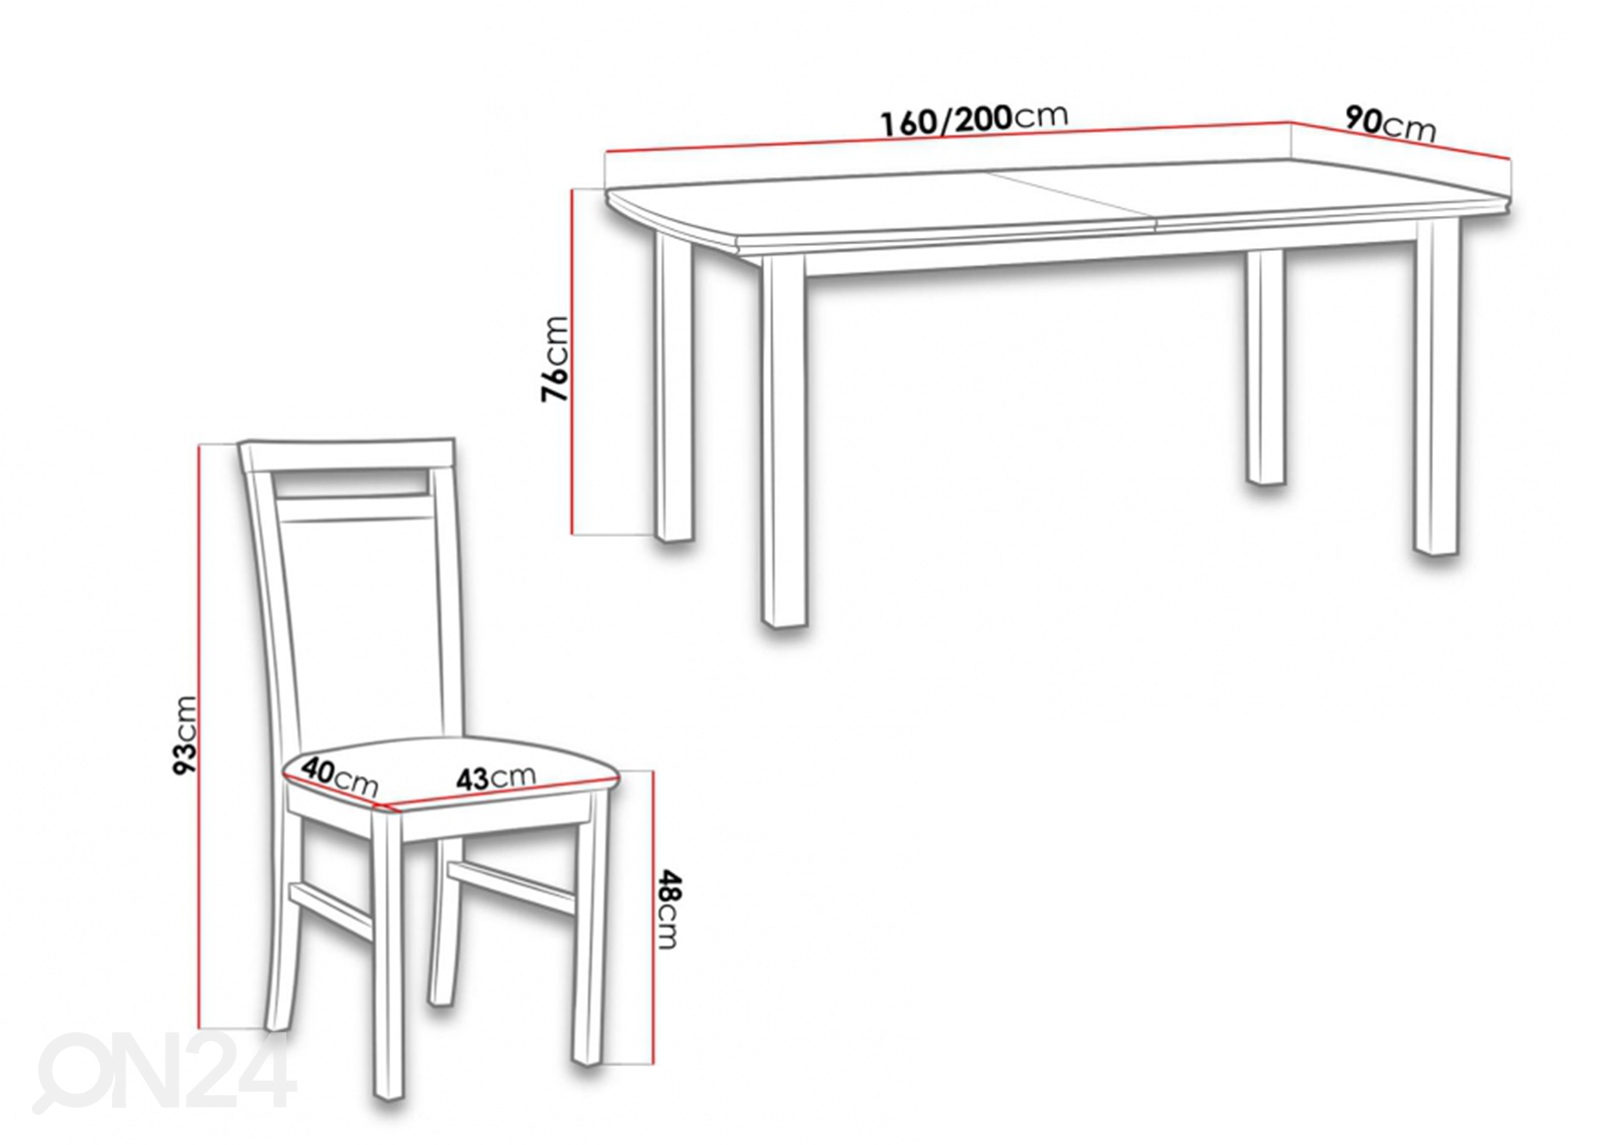 Удлиняющийся обеденный стол 90x160-200 cm + 6 стульев увеличить размеры